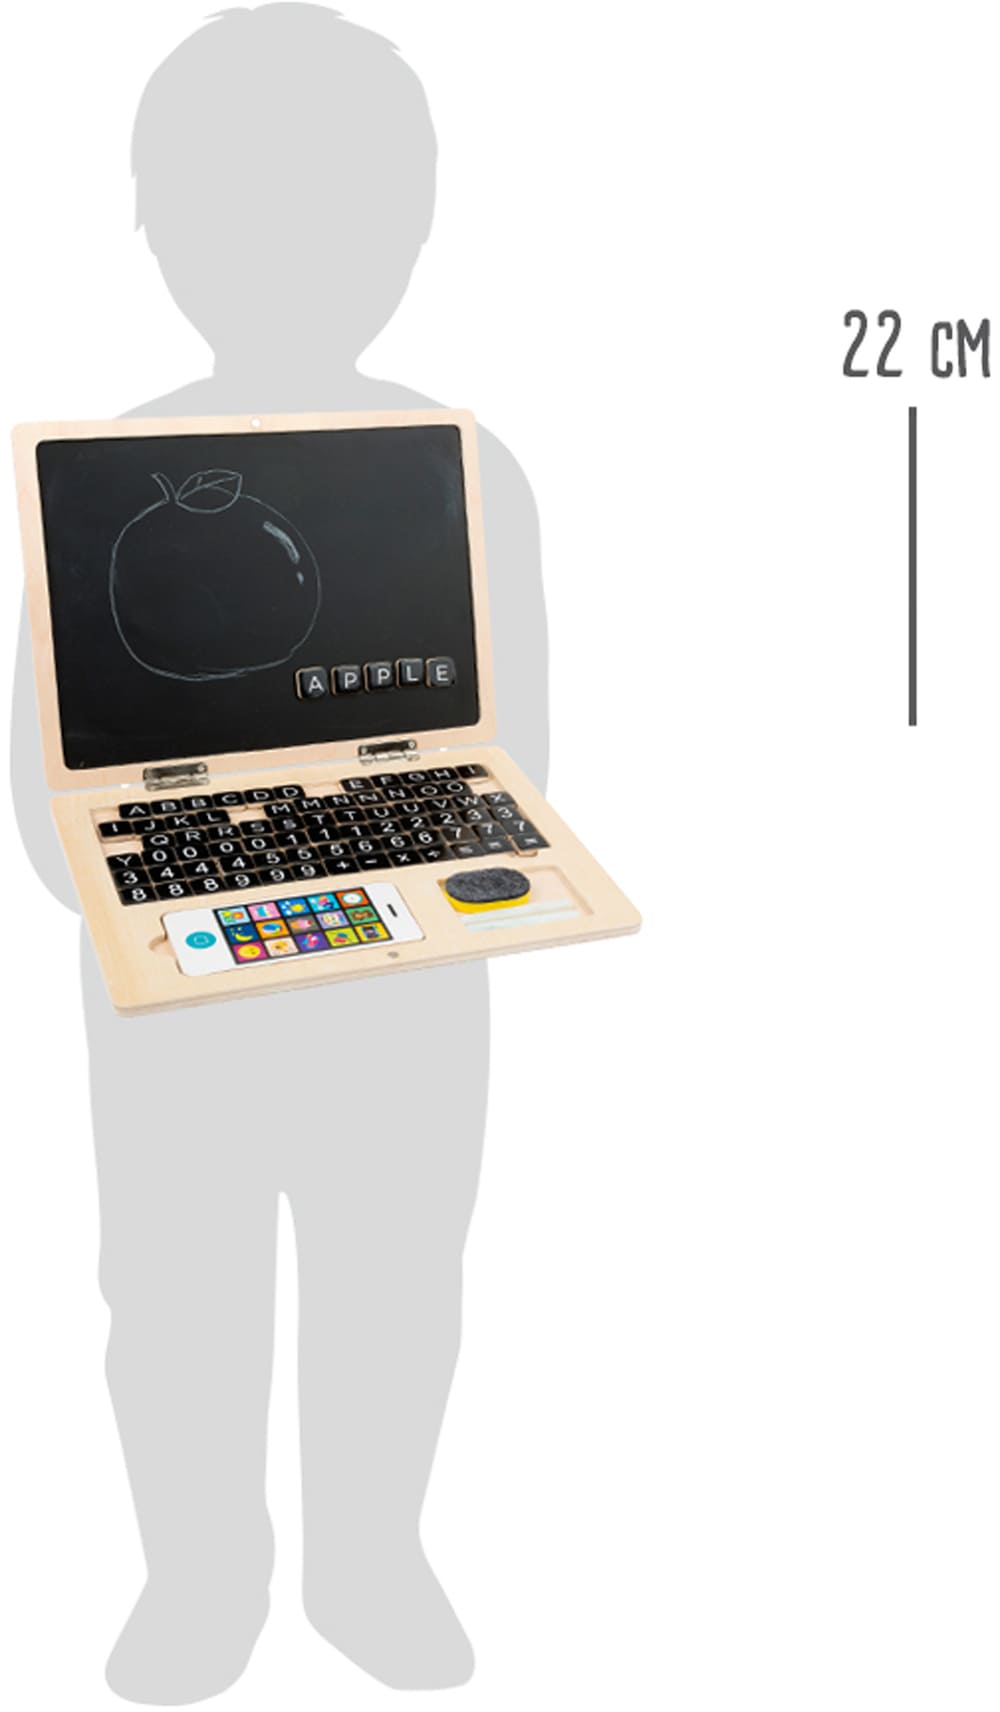 Laptop edukacyjny dla 7 latka ułatwi naukę w szkole